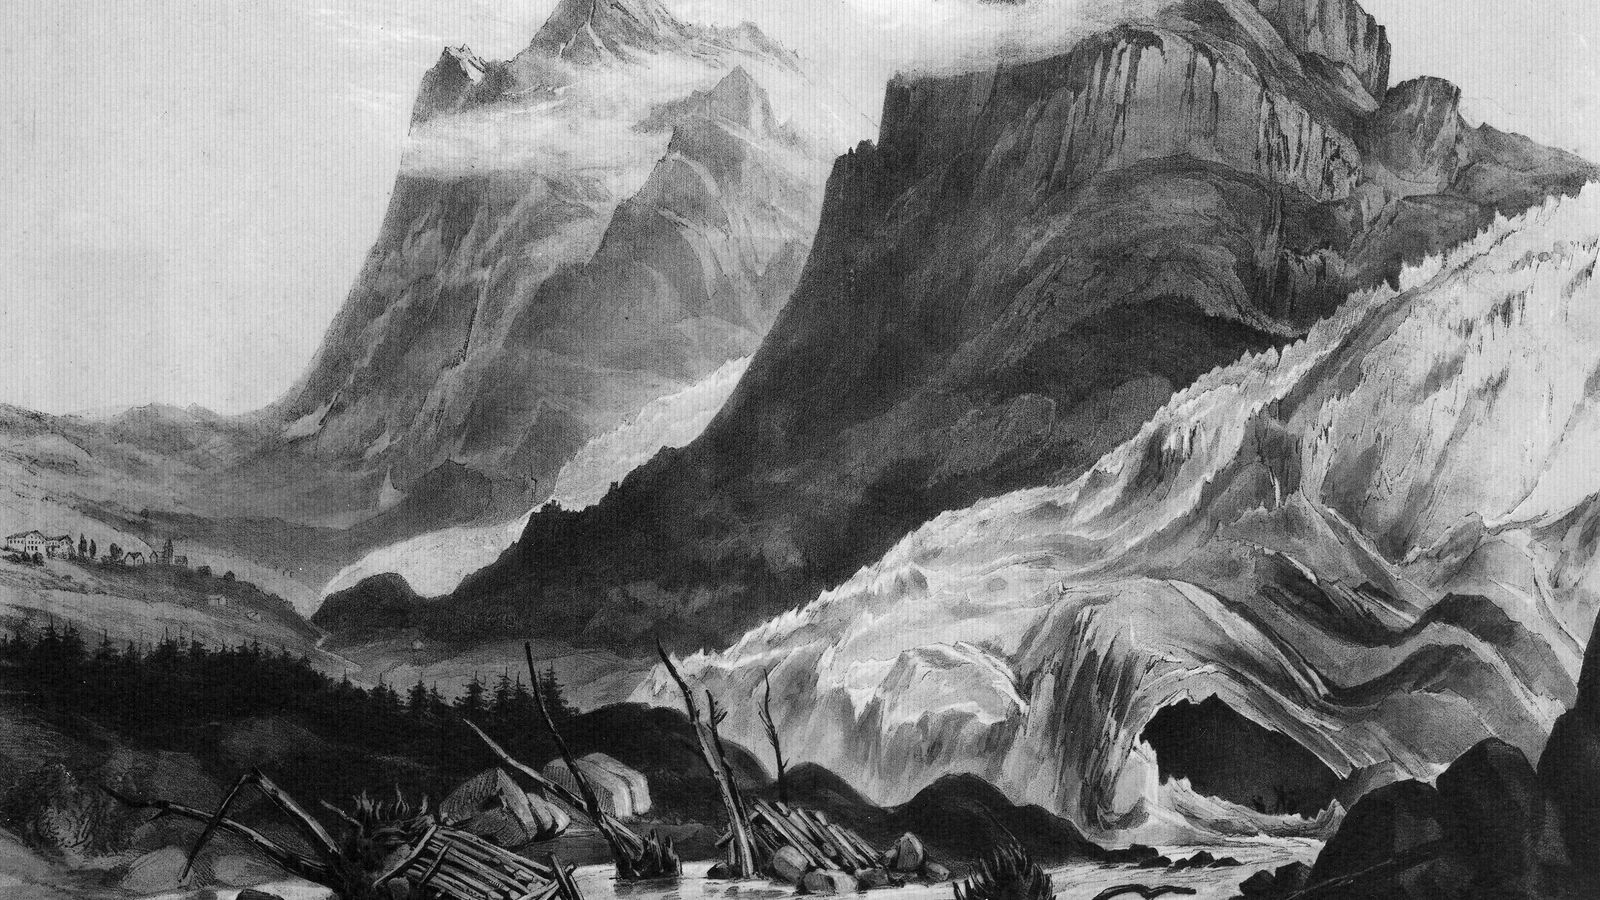 Untere Grindelwaldgletscher 1842/43